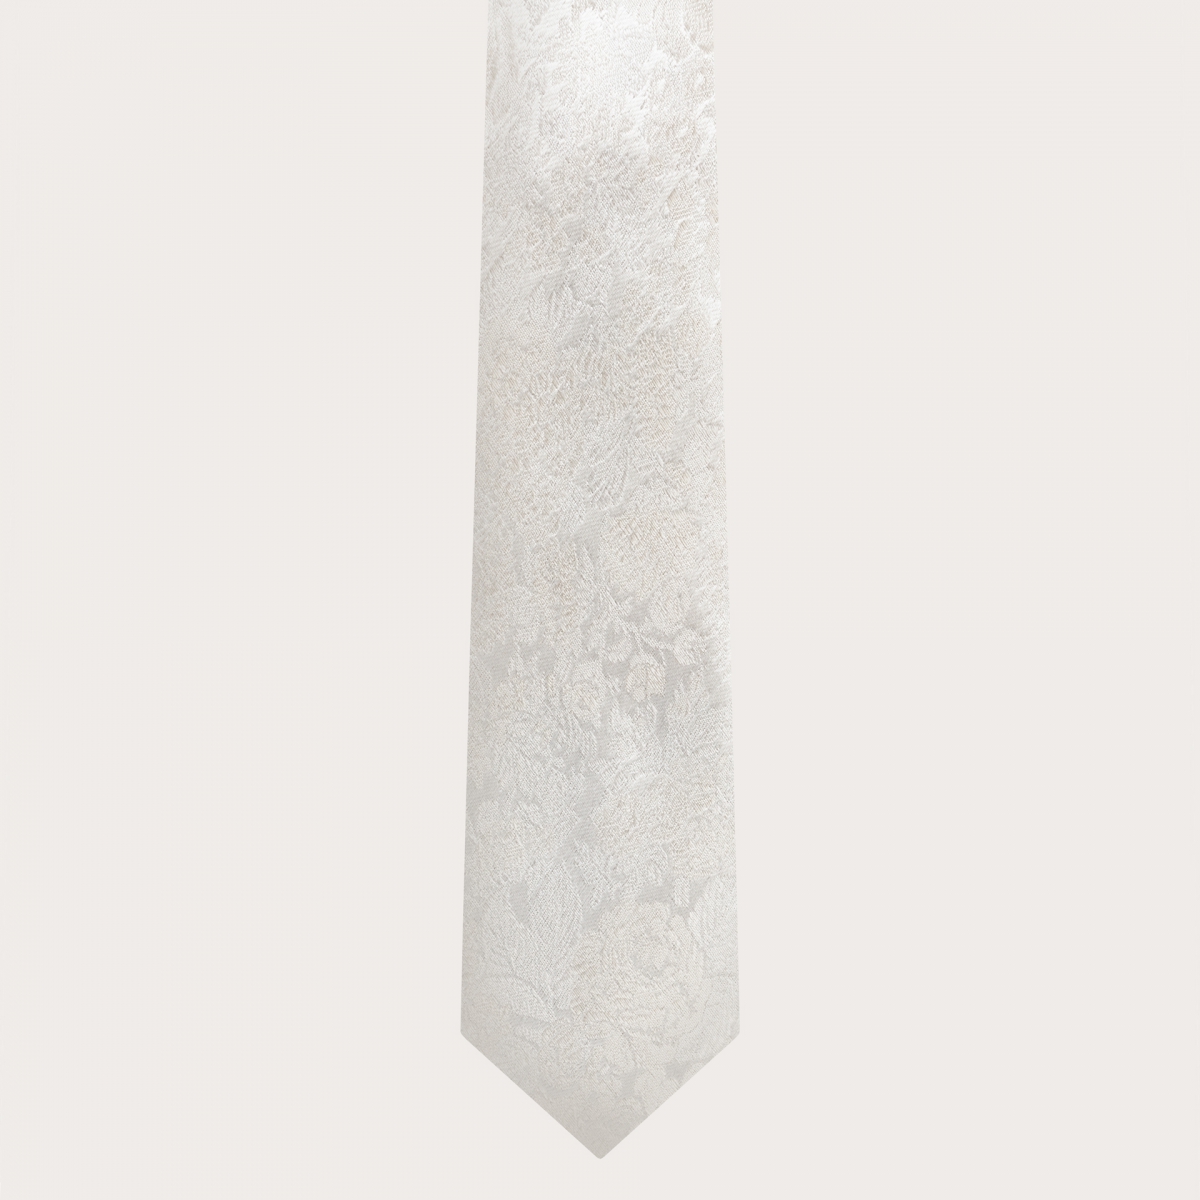 Conjunto de novia corbata y pañuelo de bolsillo en fina seda jacquard blanca